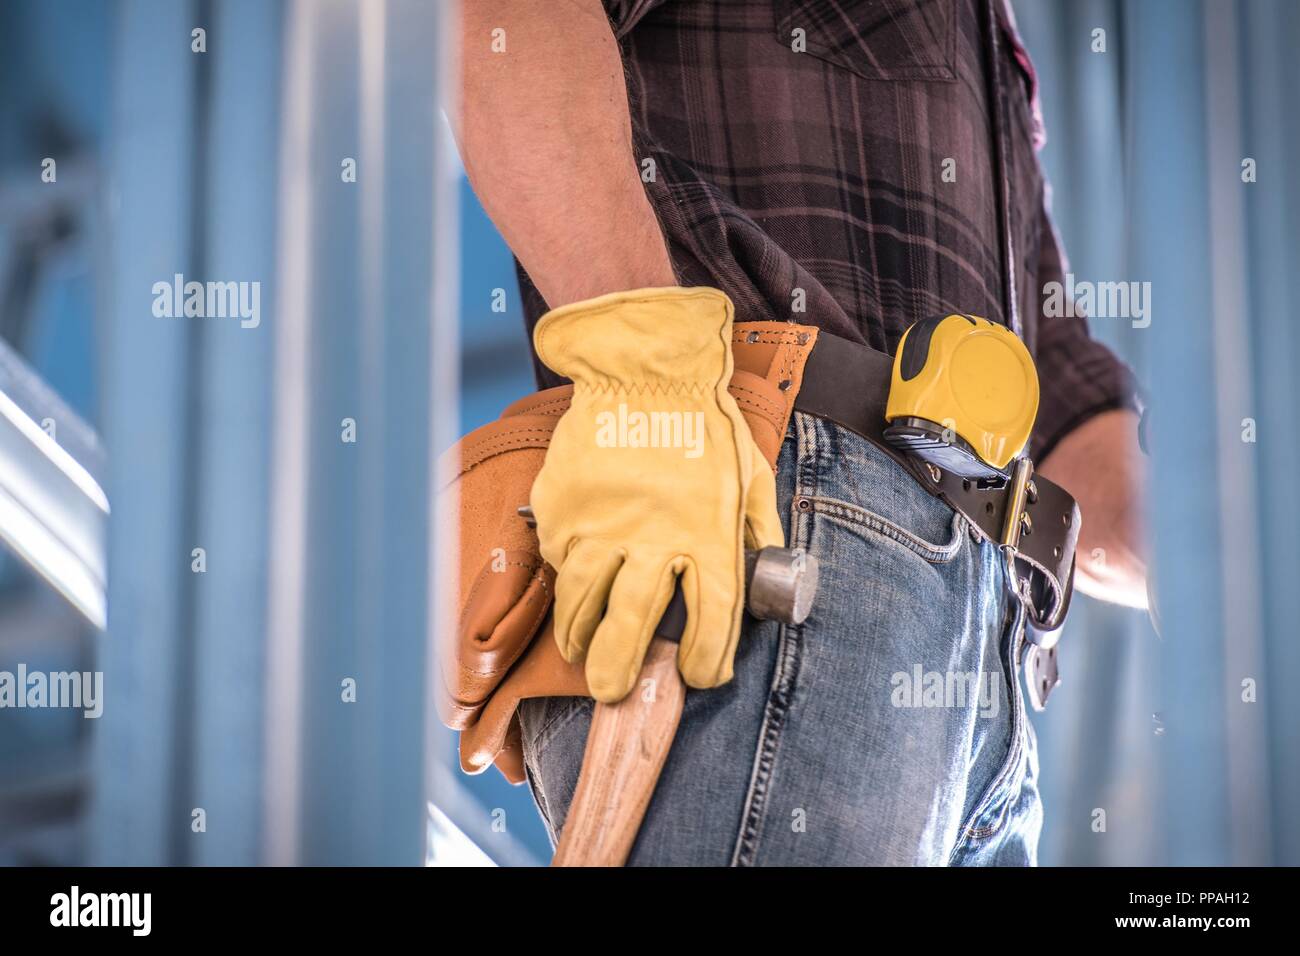 Trabajador · de · la · construcción · herramienta · cinturón · hombre ·  trabajo - foto stock © Kurhan (#7053827)